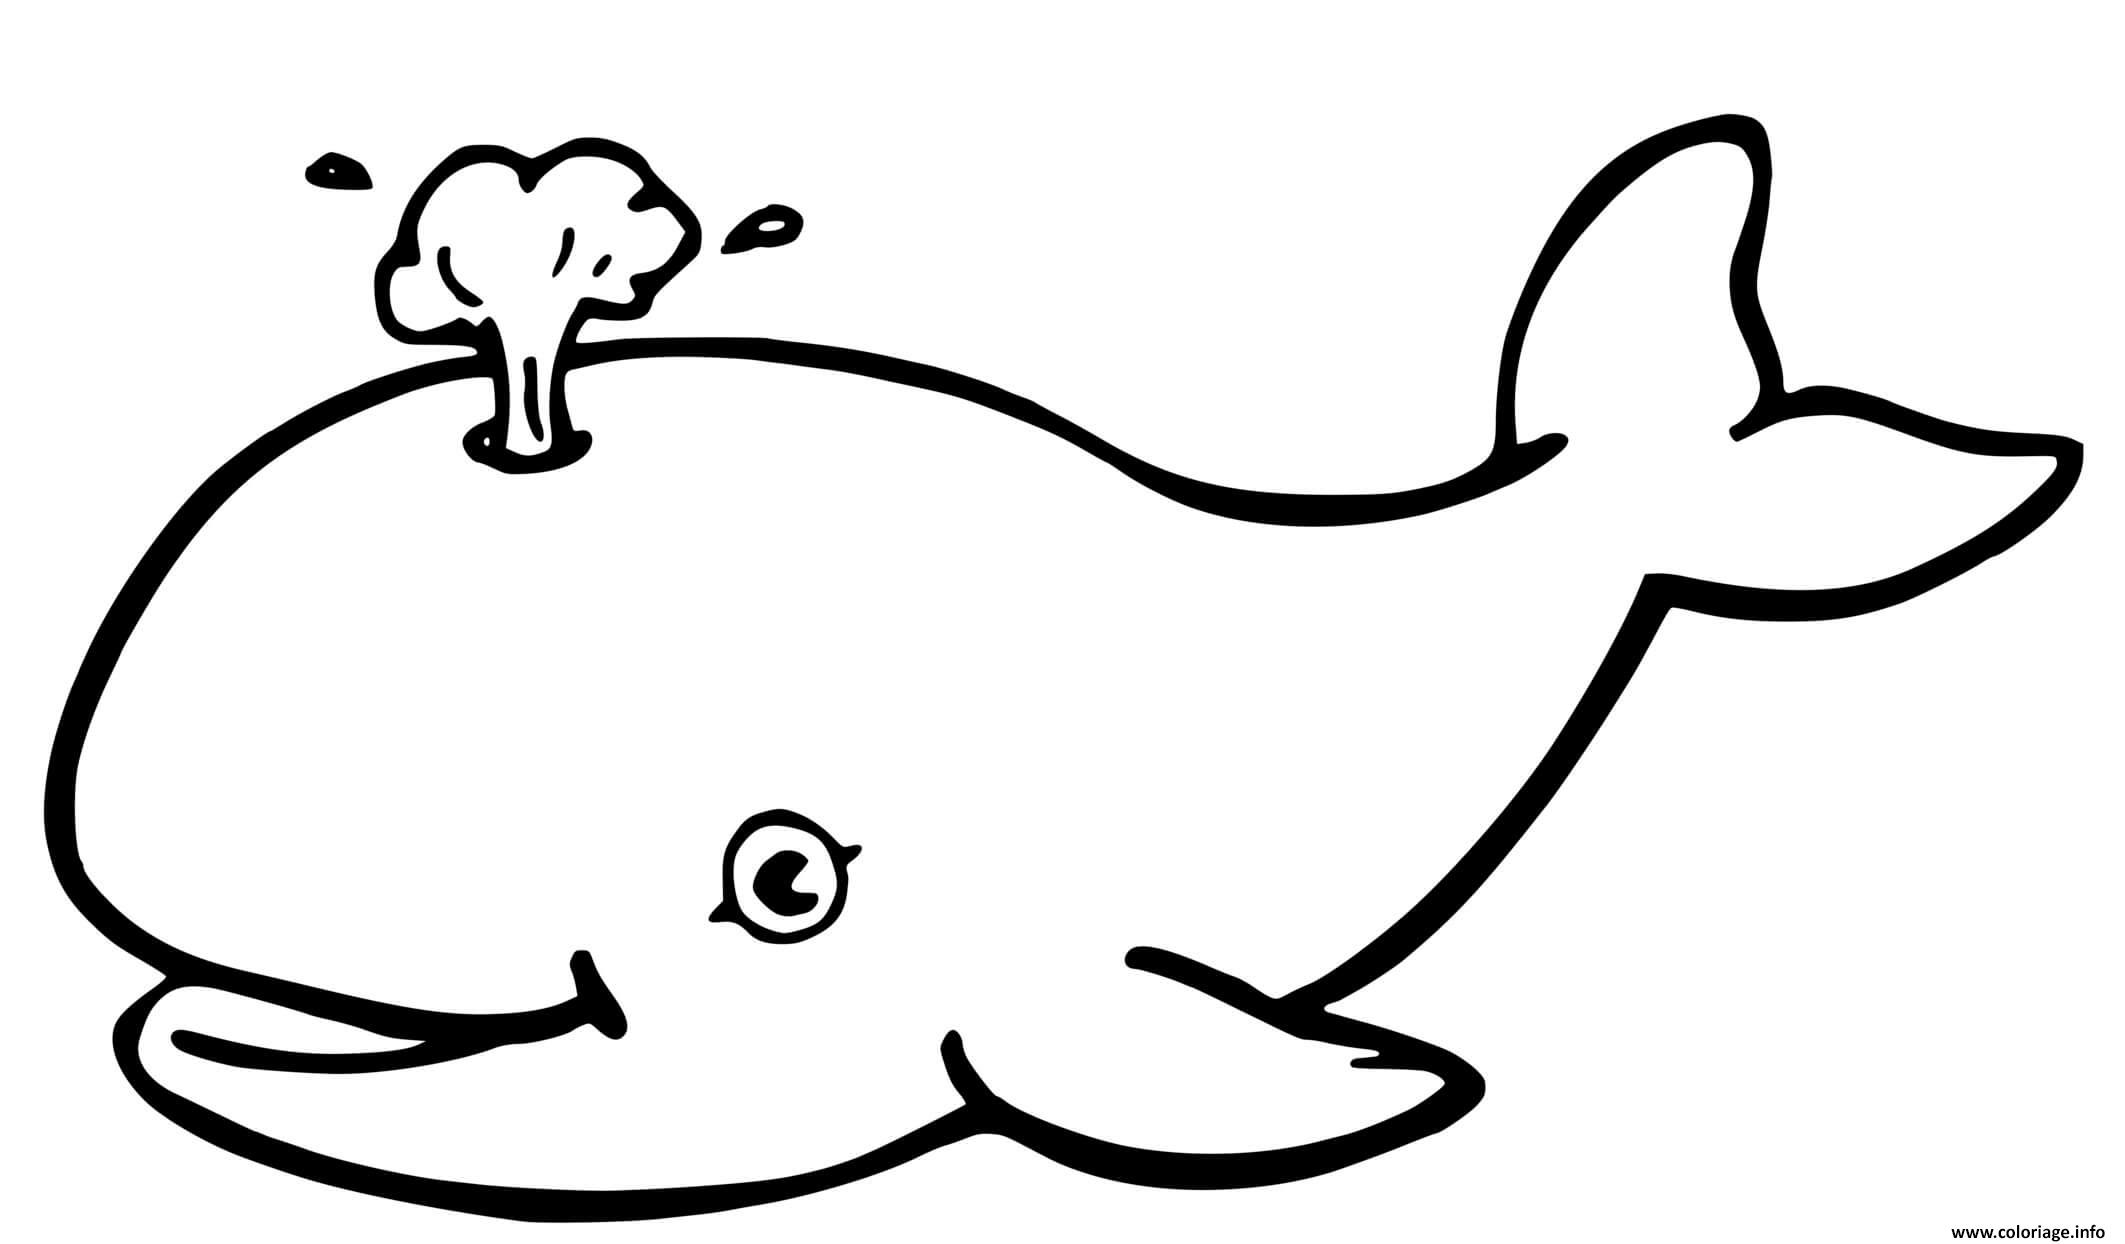 Dessin baleine simple pour enfants Coloriage Gratuit à Imprimer